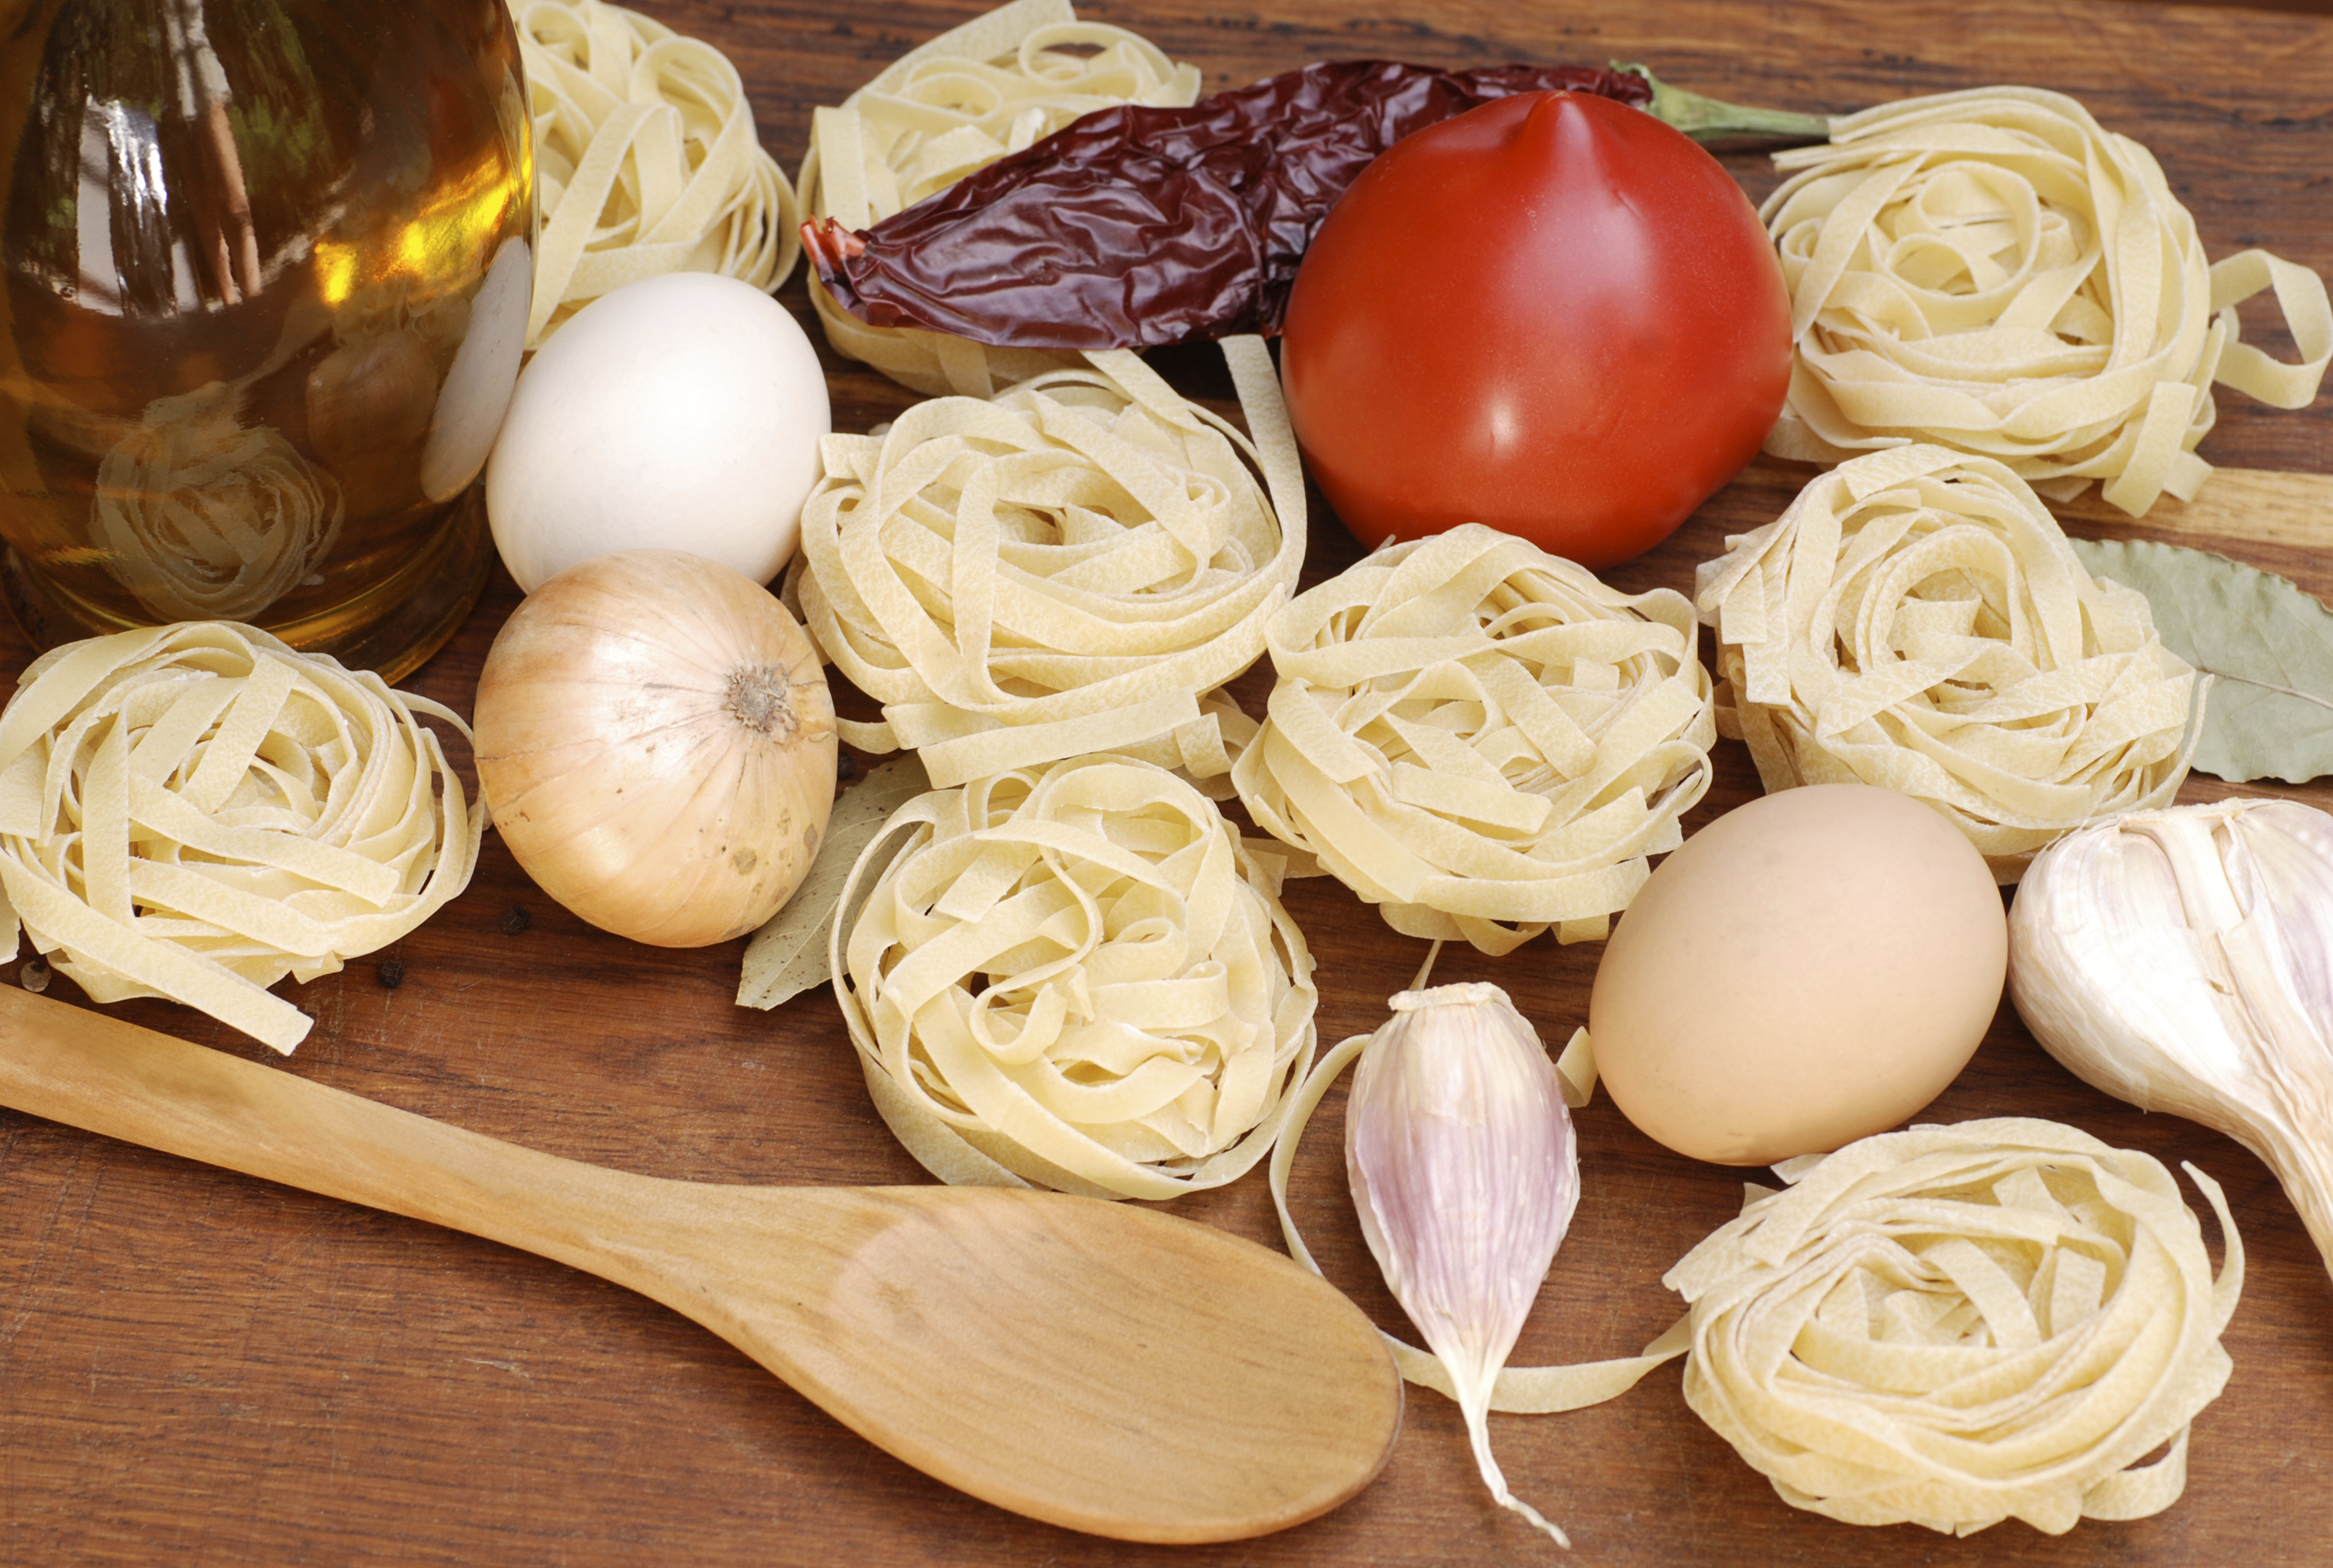  Esportare pasta fresca e pasta secca italiana